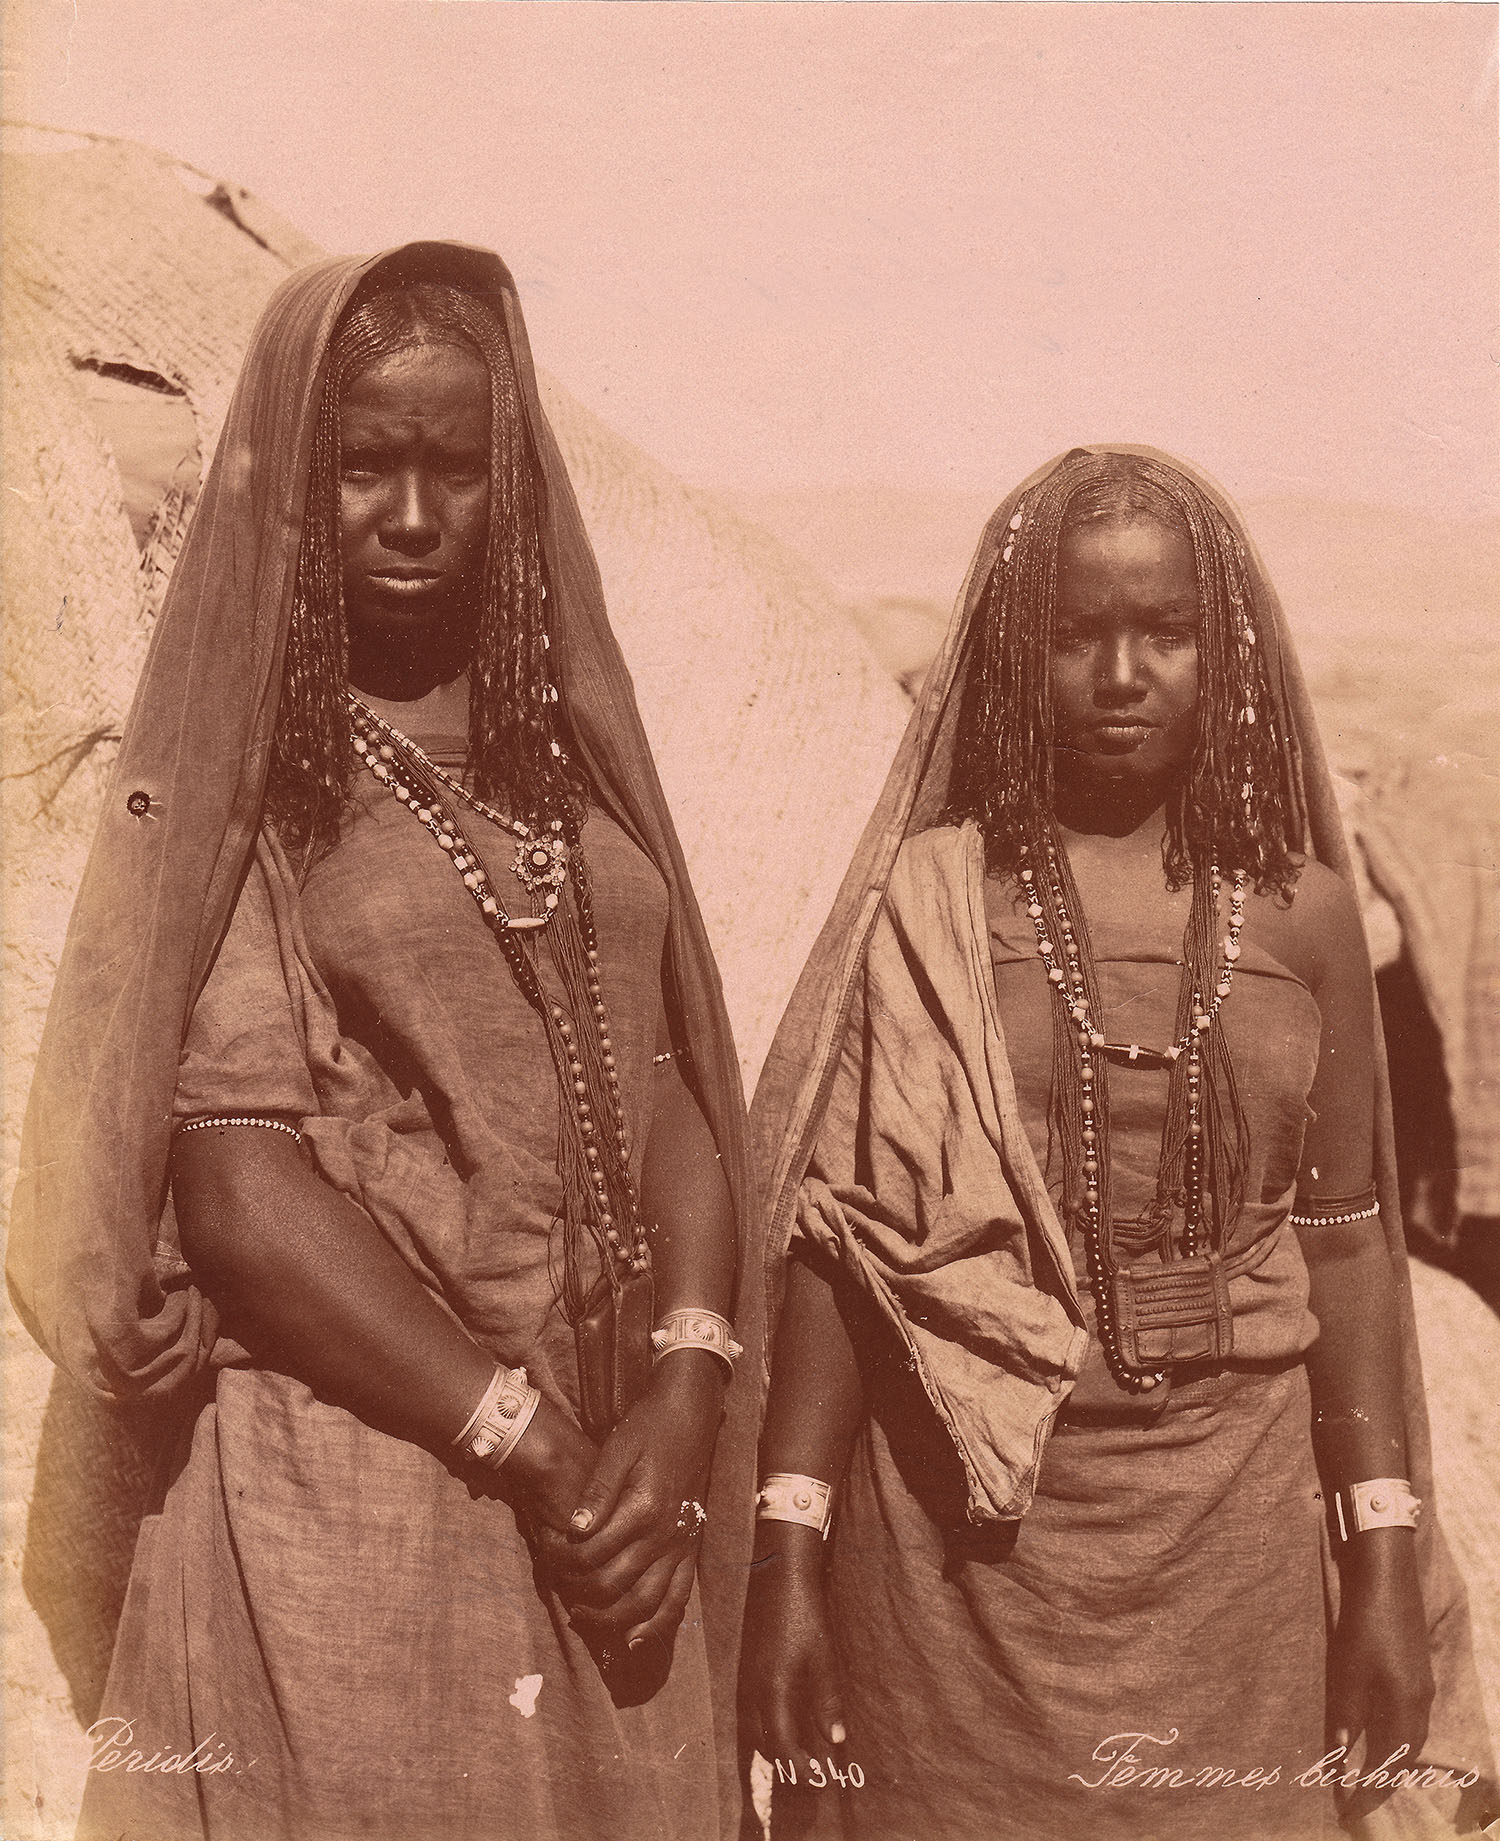 Femmes Bicharis (c.1880s)